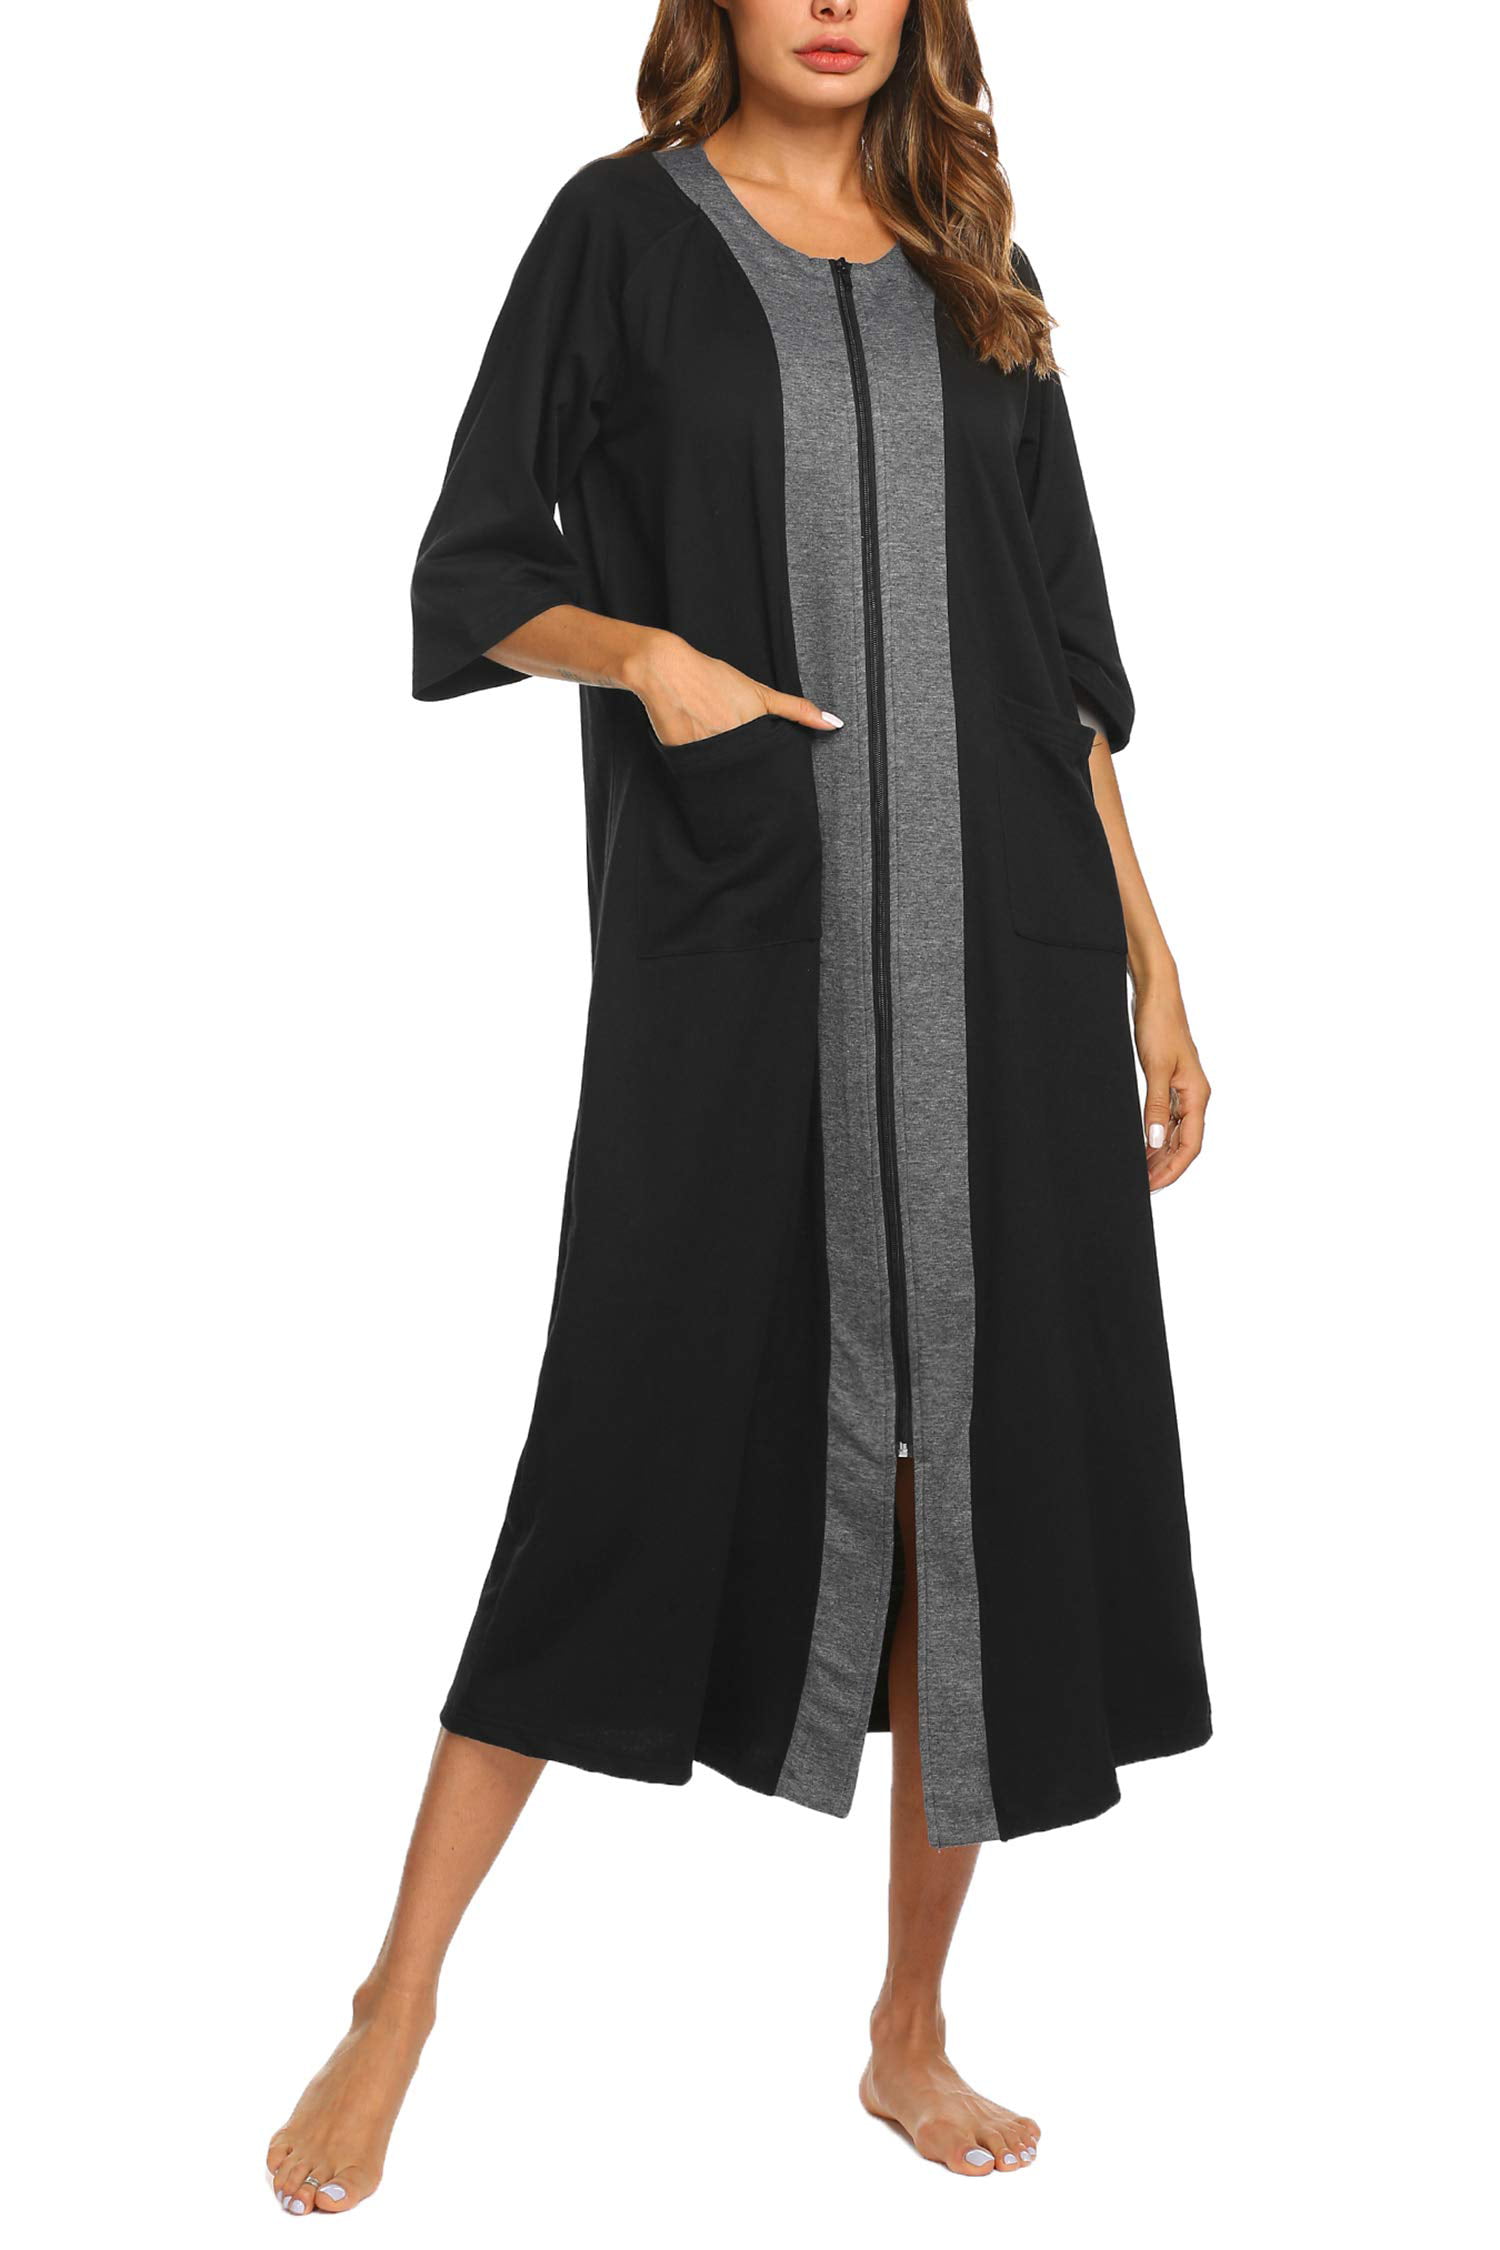 a.Jesdani Women Zipper Robe 3/4 Sleeves Loungewear Full Length